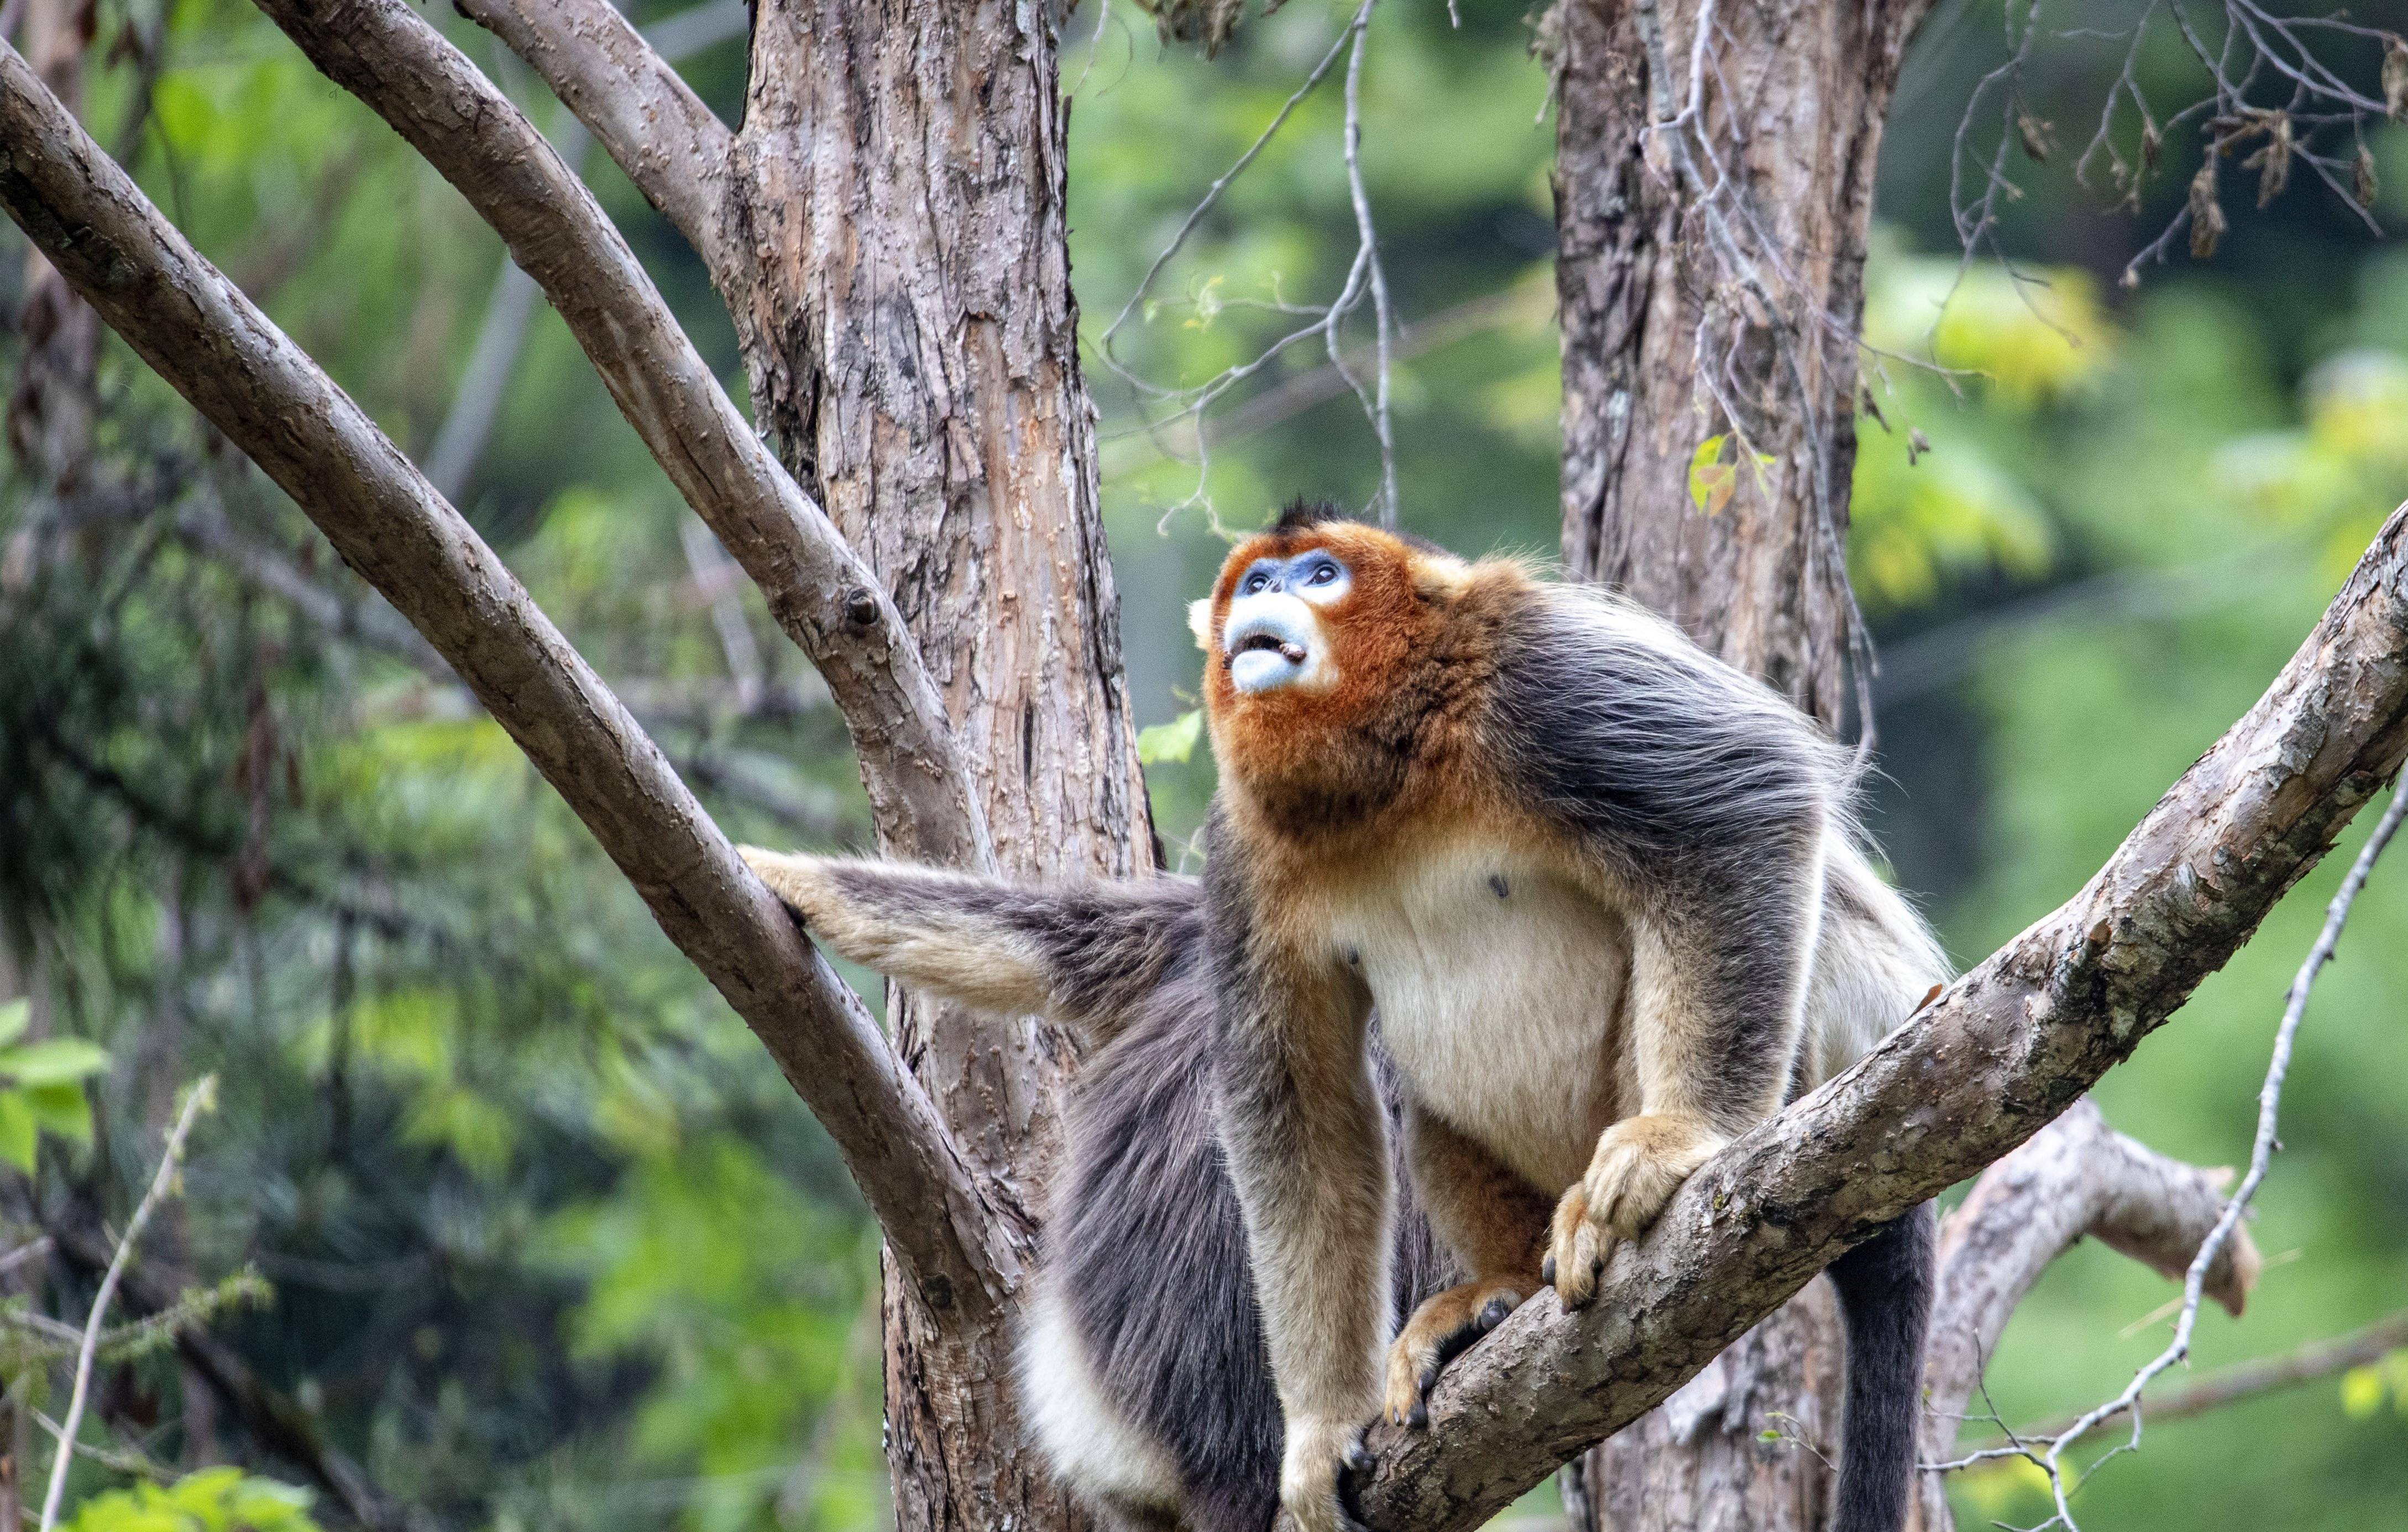 原创四川九寨沟:白河国家级自然保护区内的川金丝猴